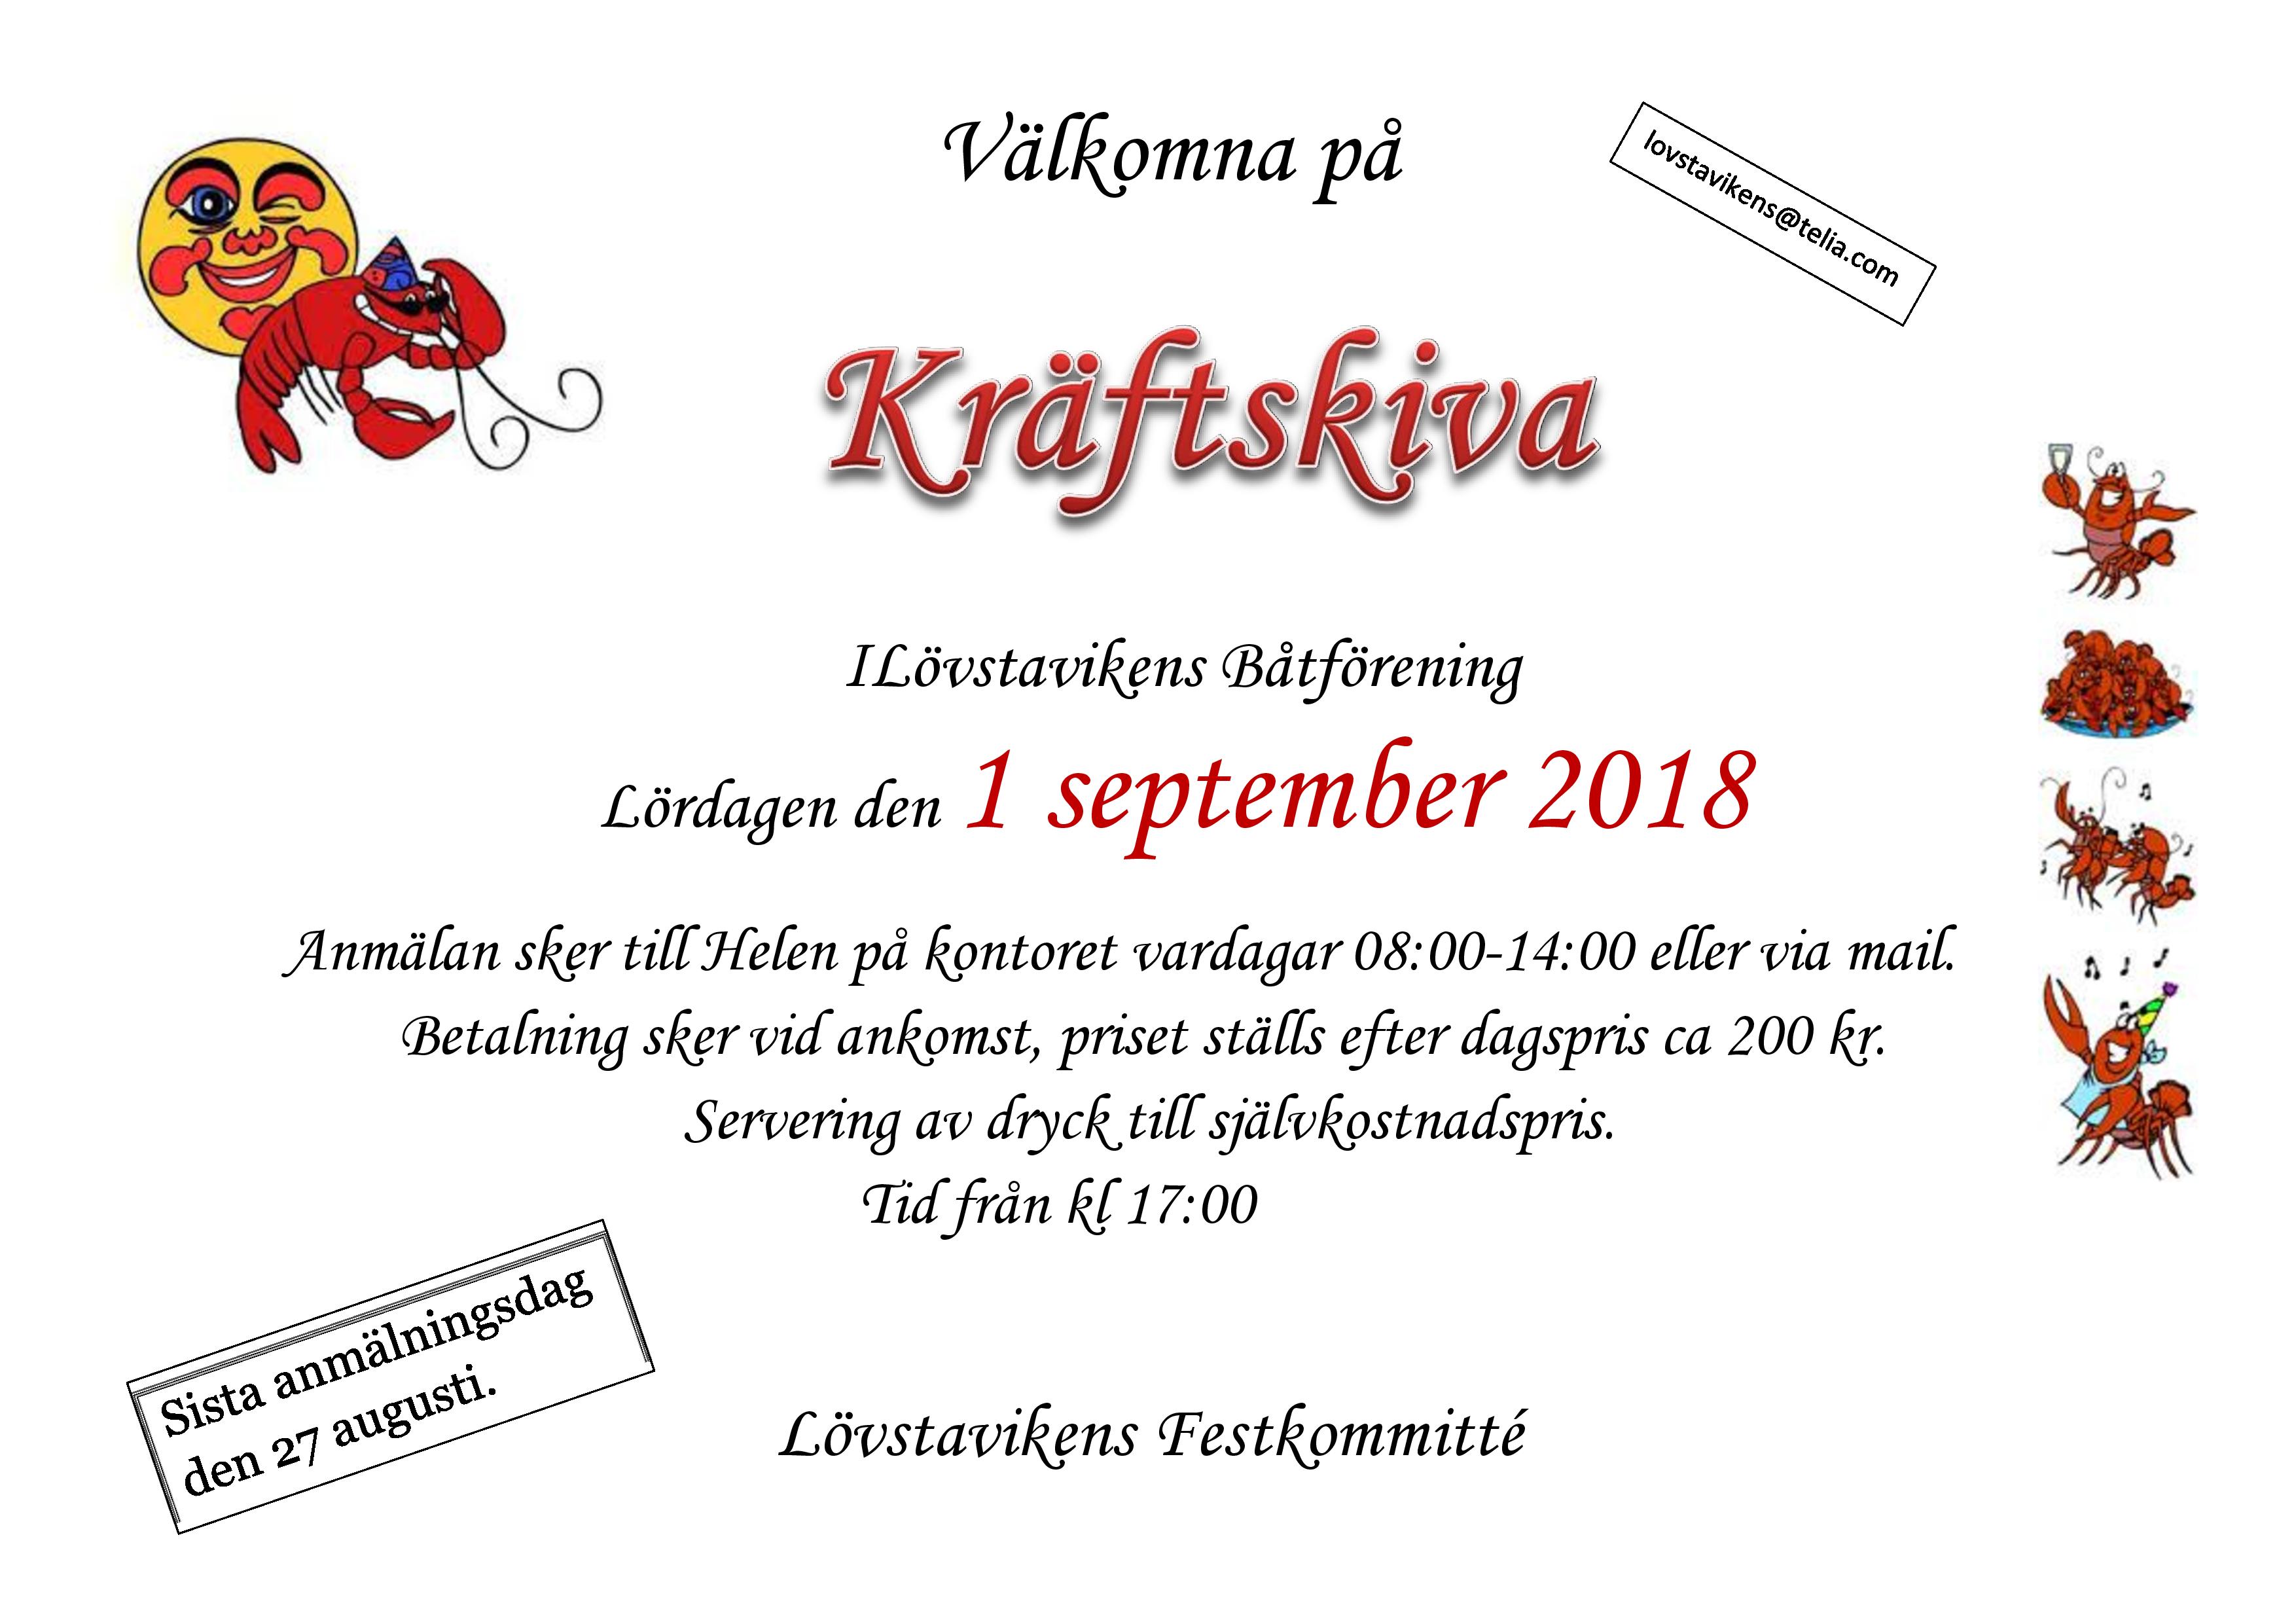 Vlkomna p krftskiva 2018-page-001